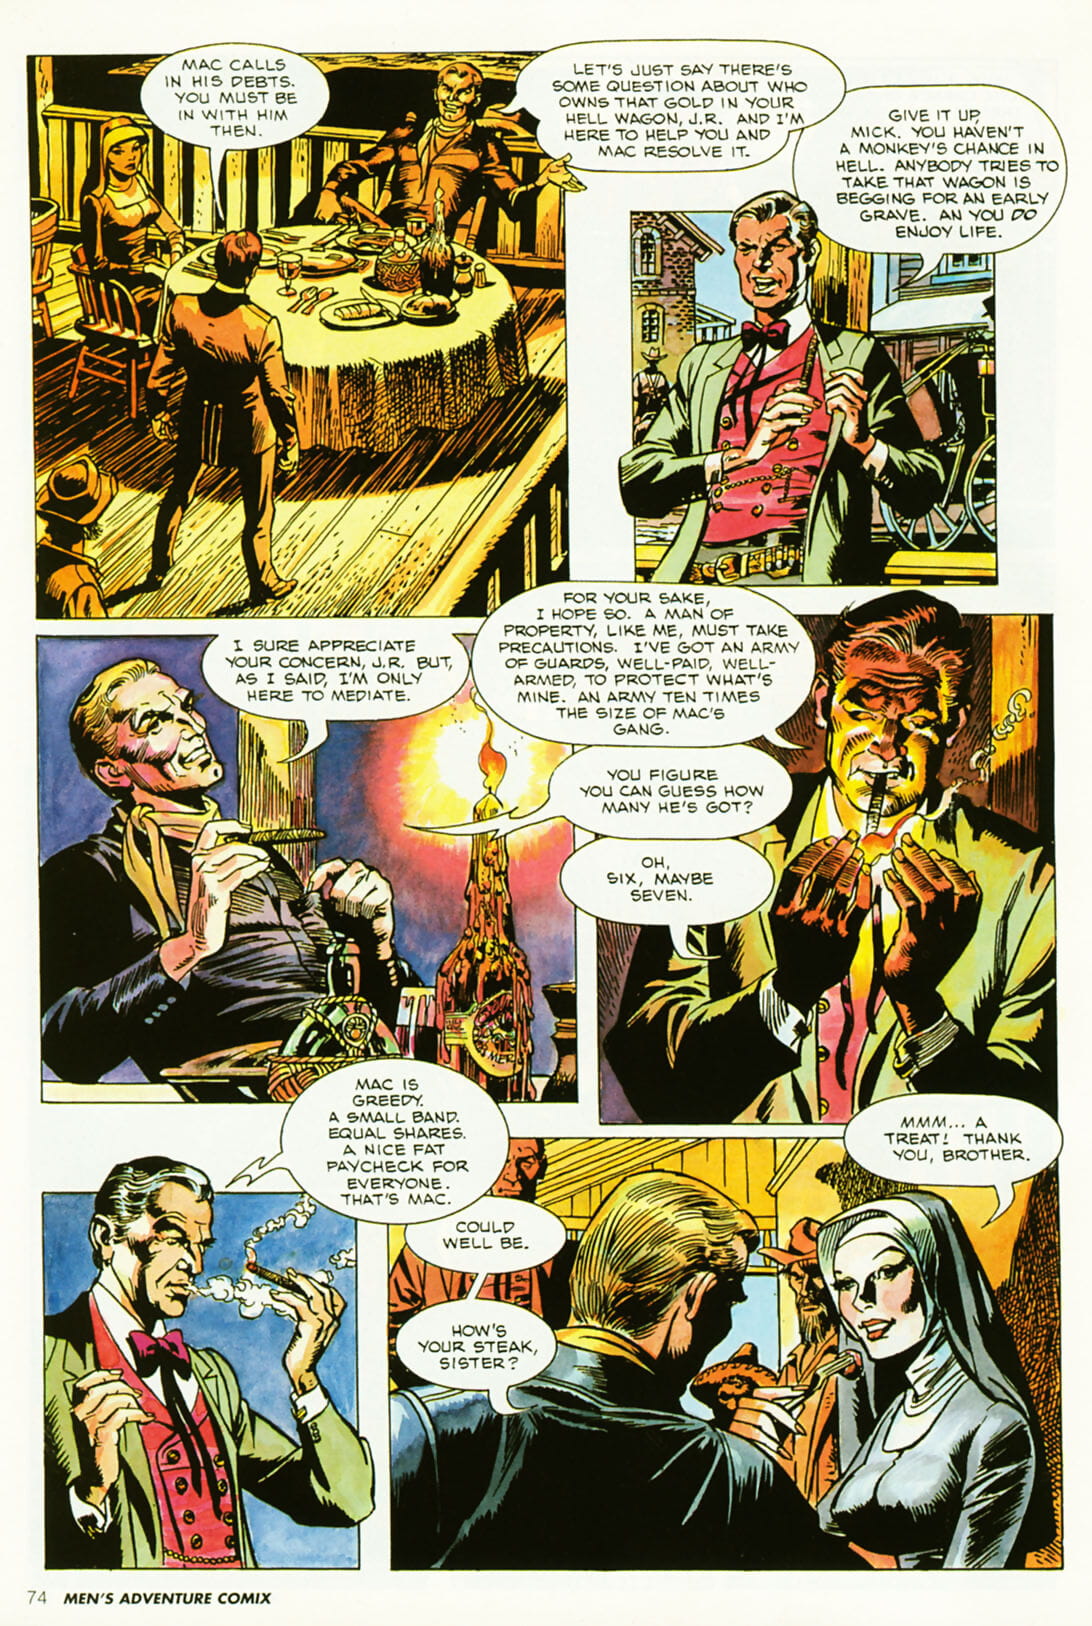 Penthouse Mens Adventure Comix #5 - part 2 page 1